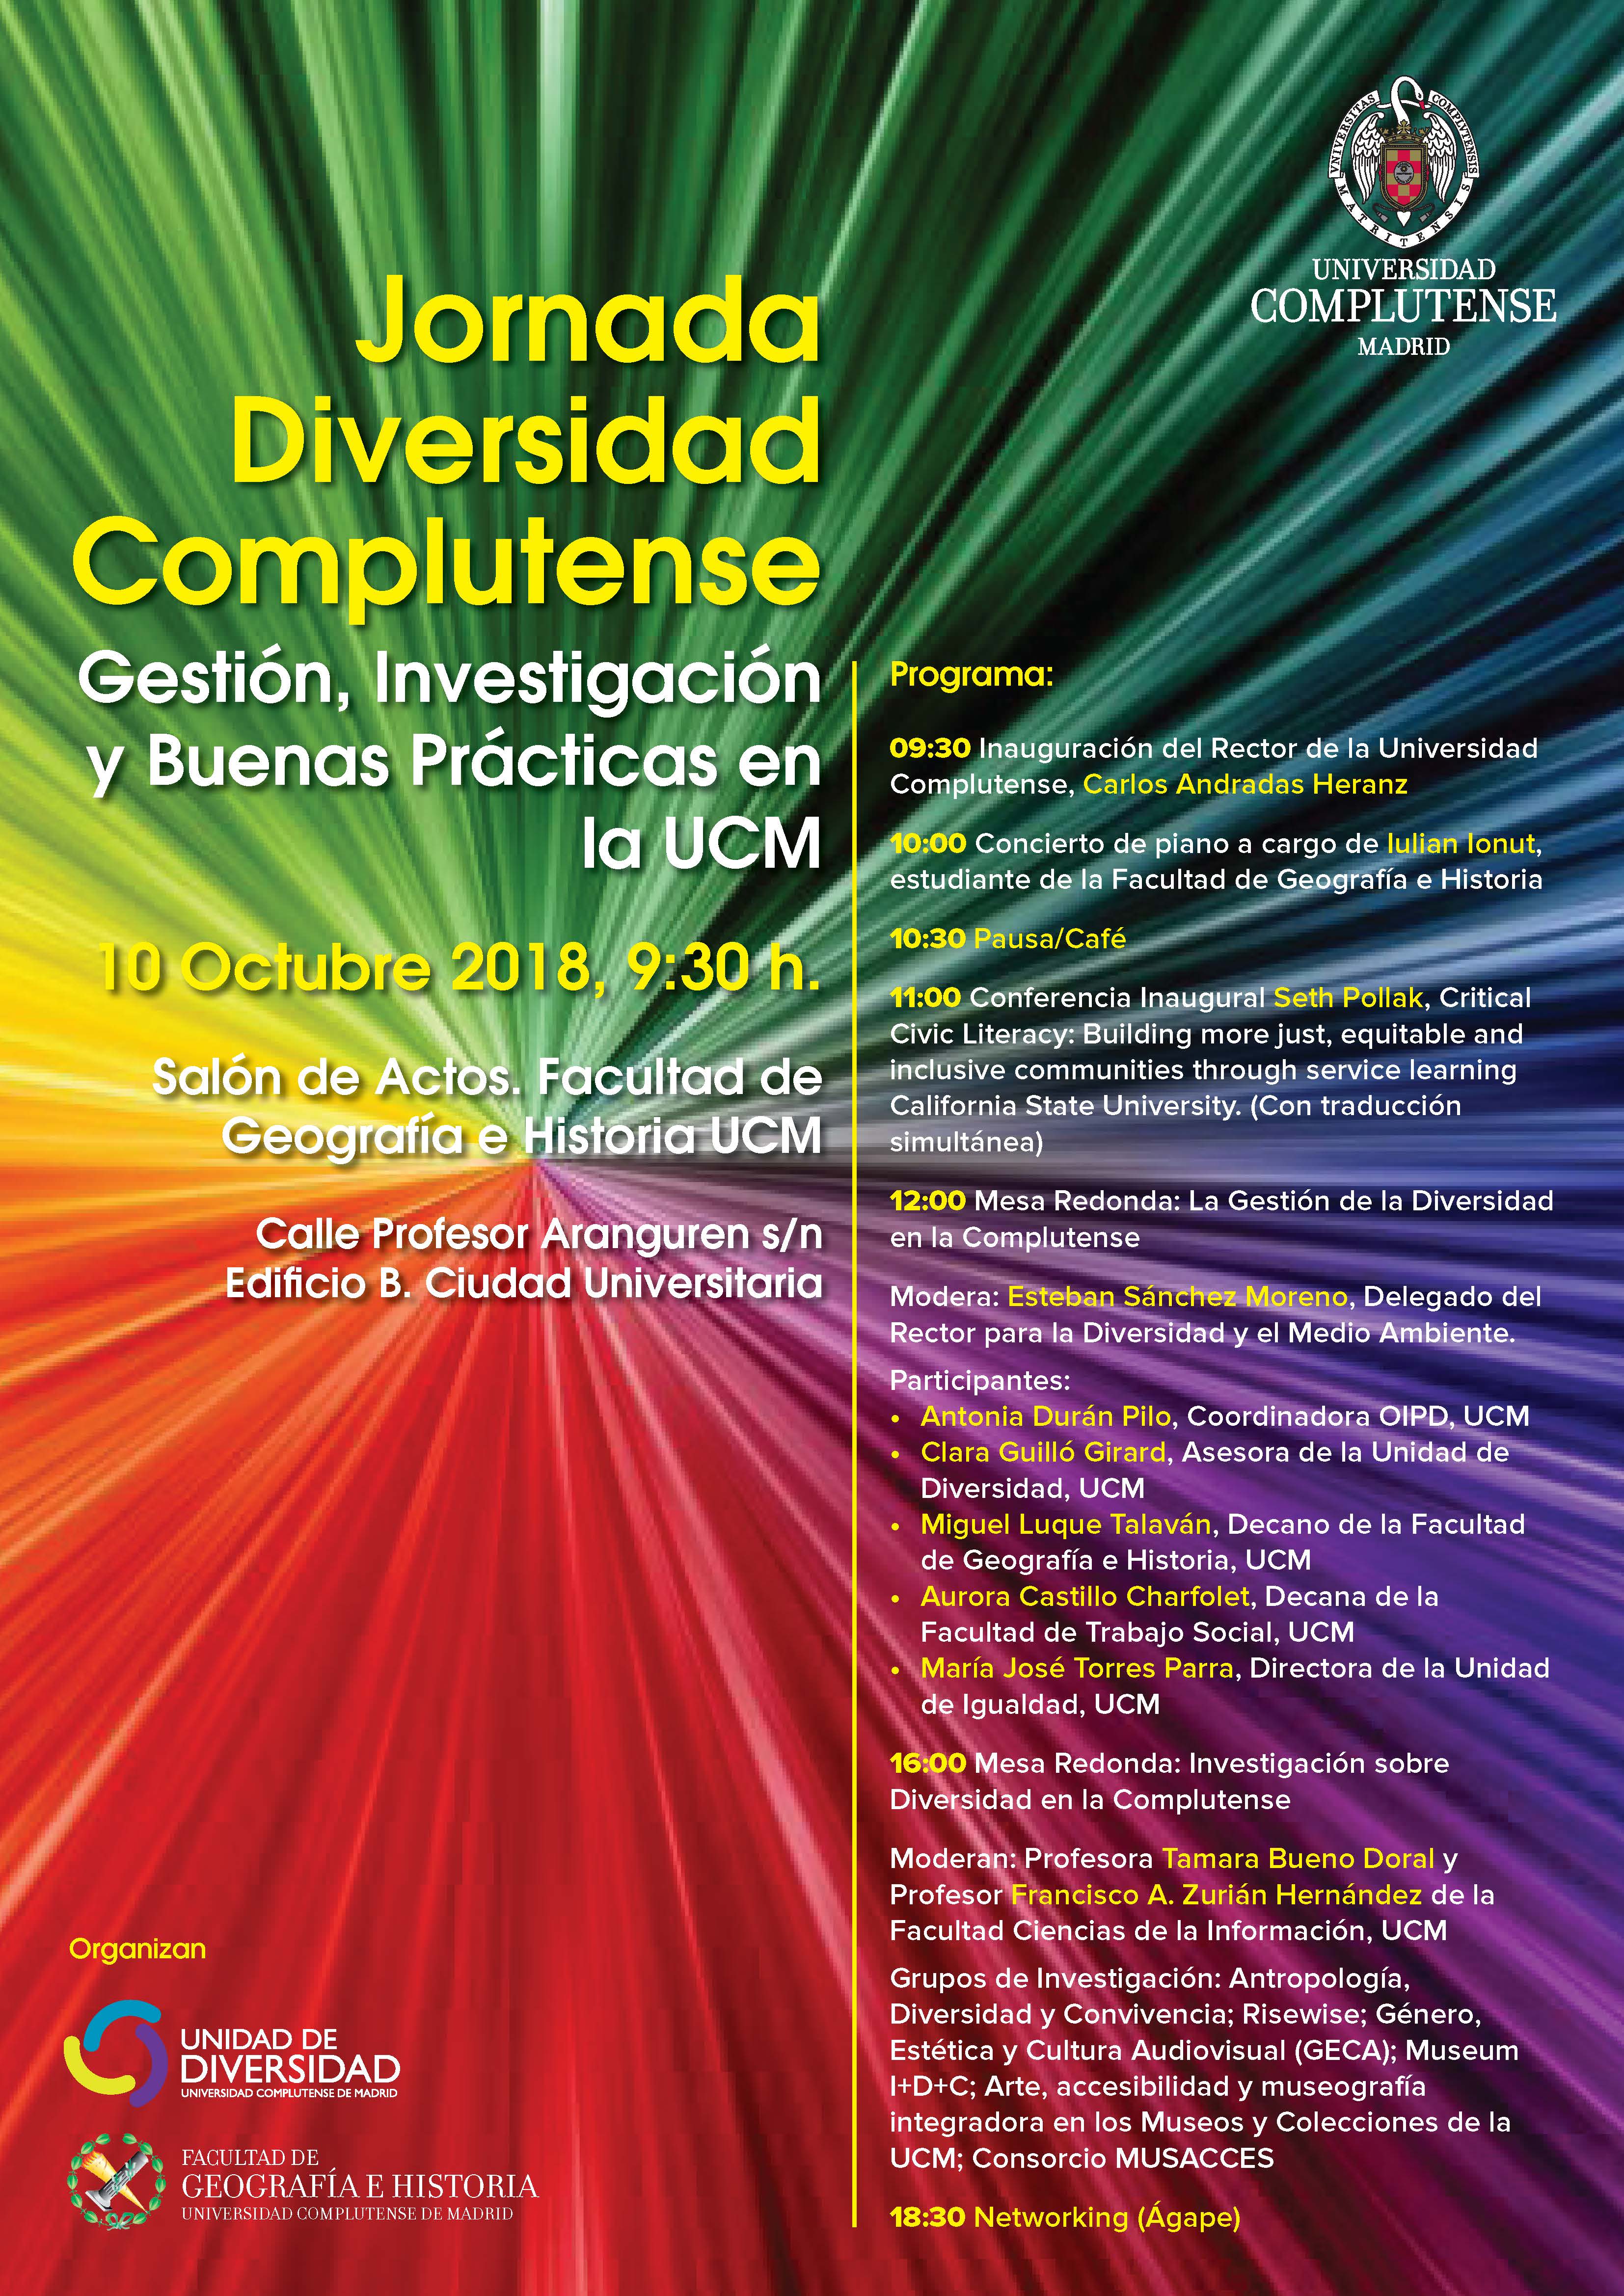 Jornada Diversidad Complutense: Gestión, Investigación y Buenas Prácticas en la UCM (Miércoles, 10 de octubre)